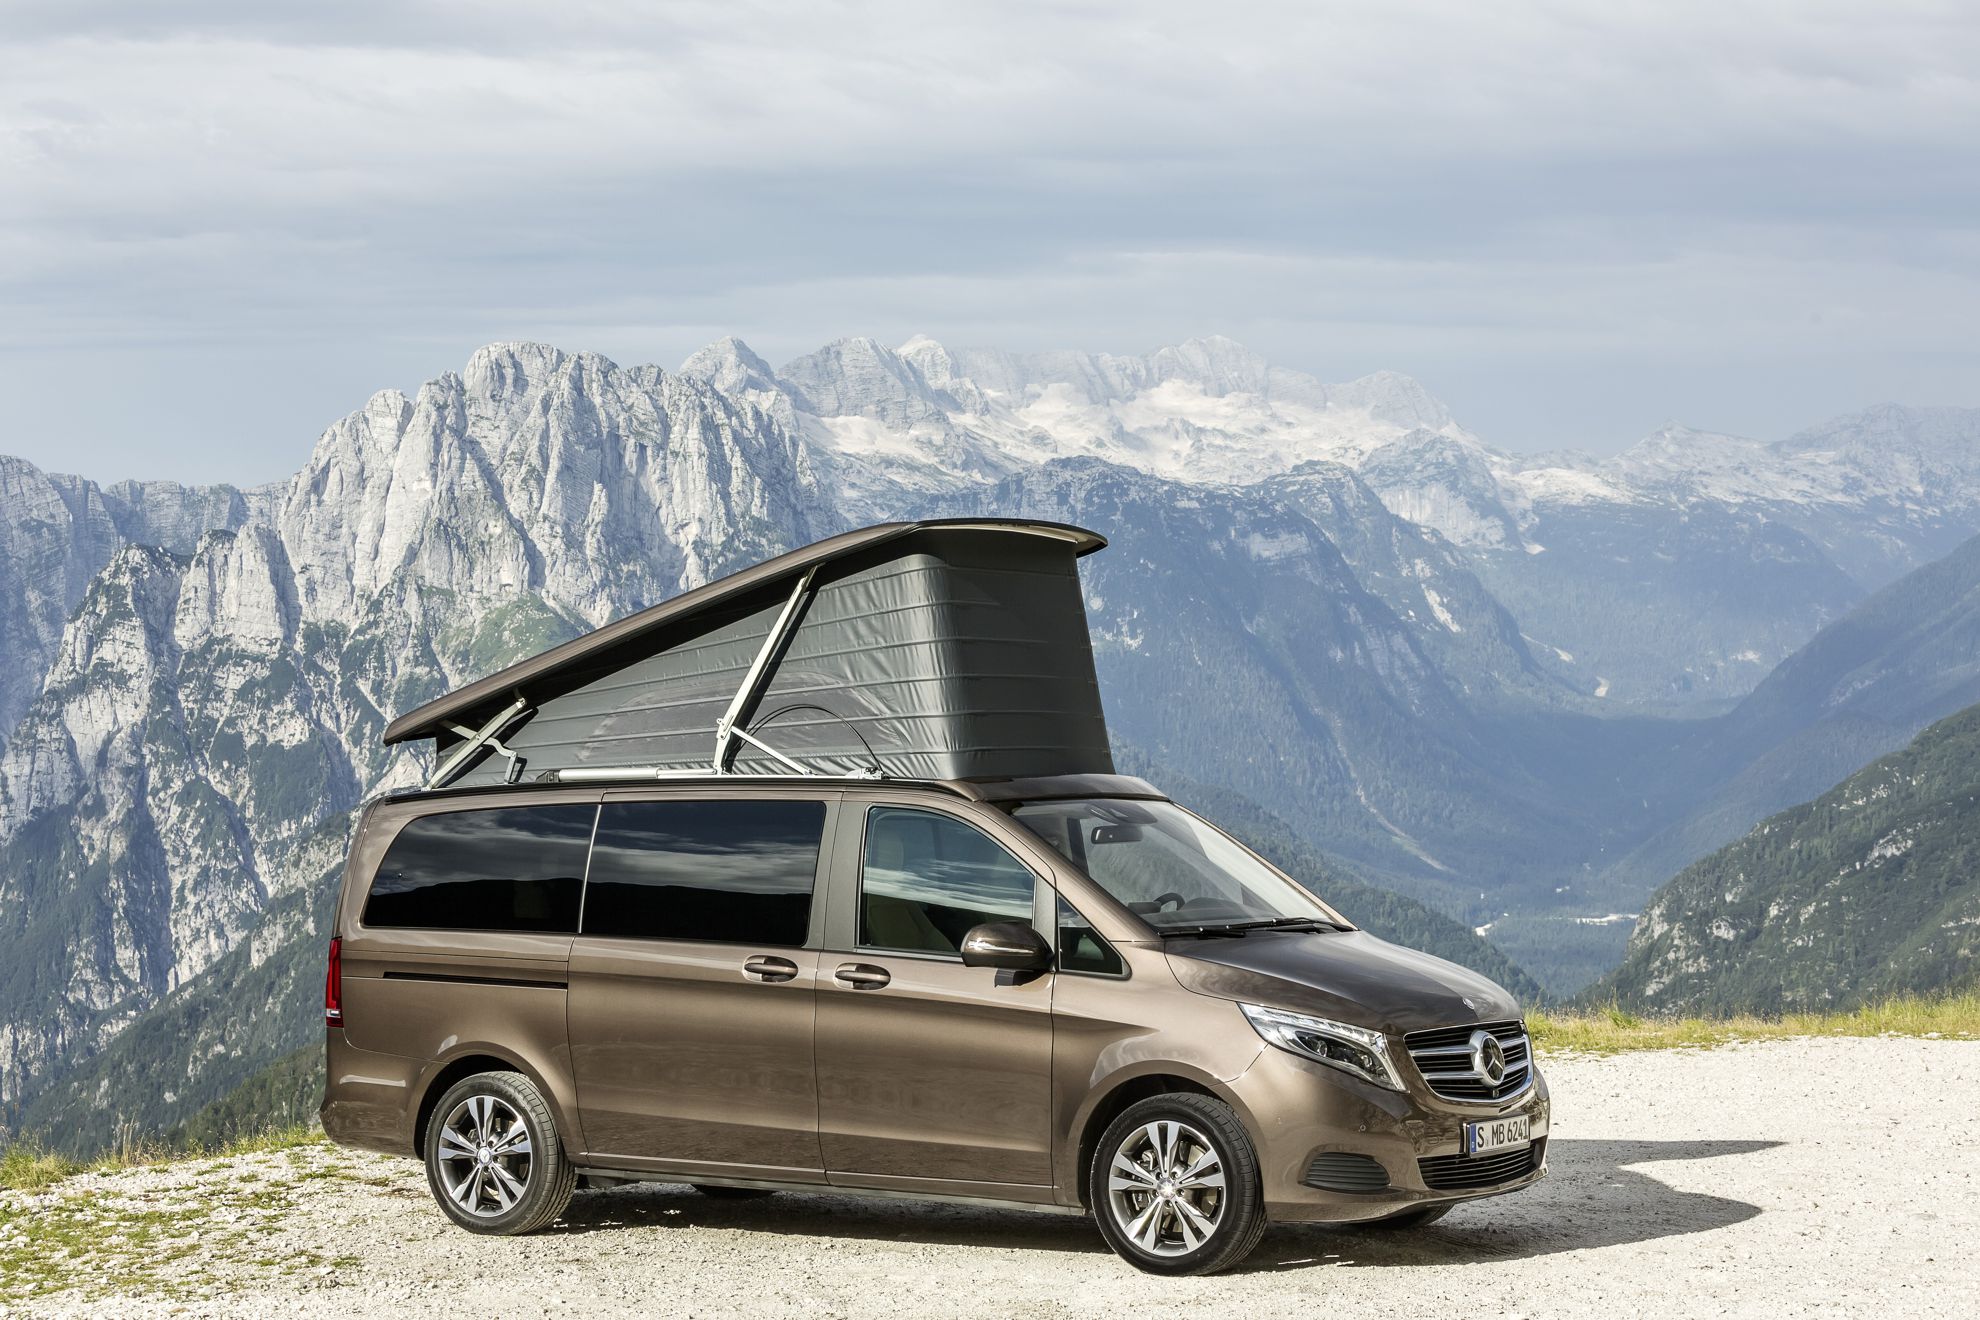 Caravan Salon 2015 in Düsseldorf: Mercedes-Benz Vans on course for success in the camper van market